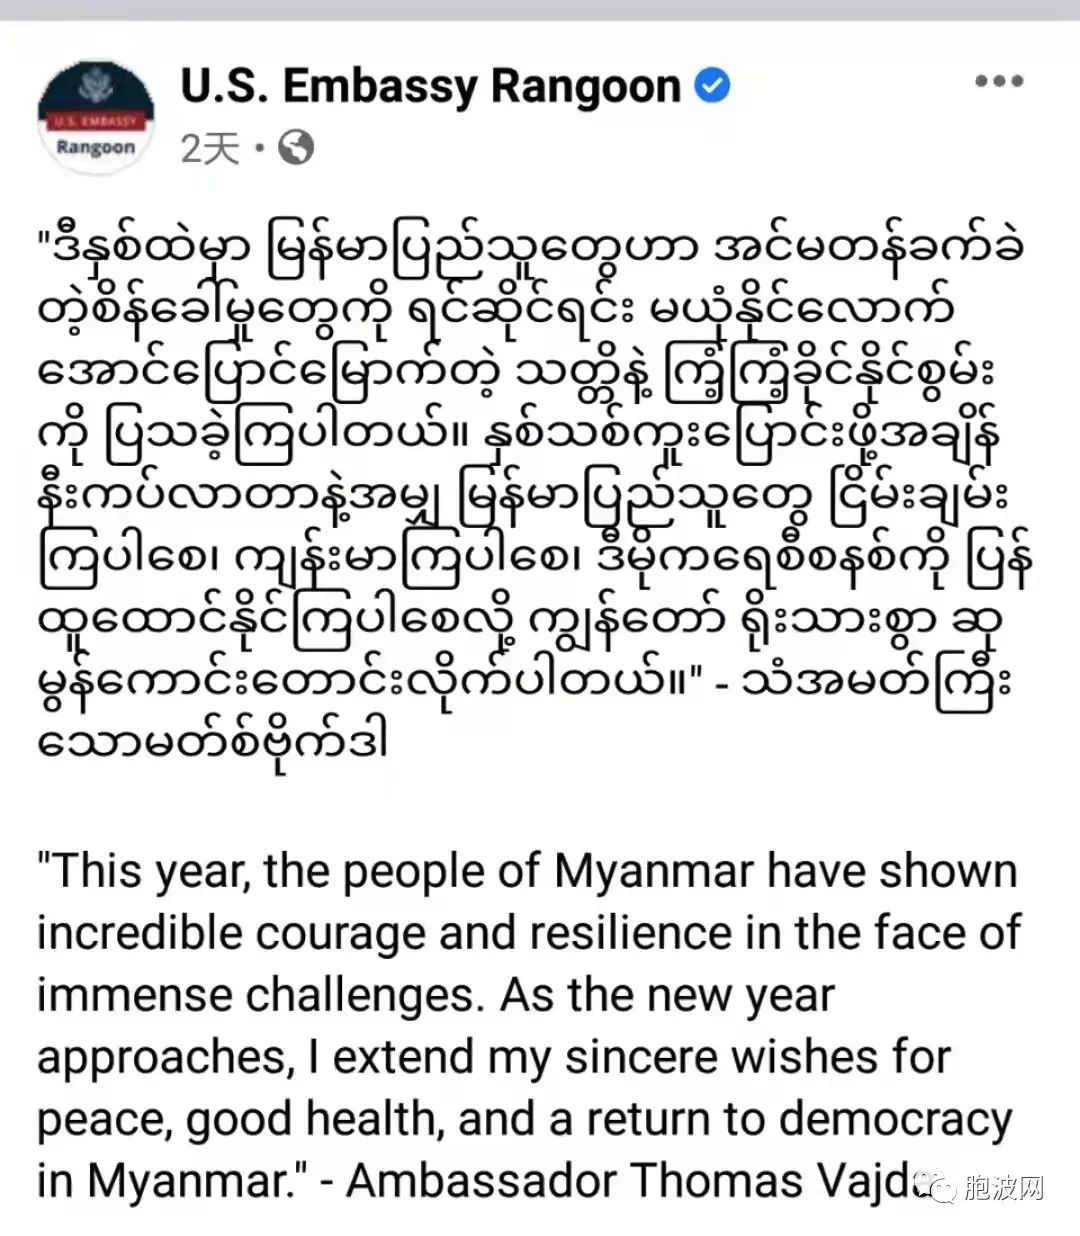 美国给缅甸民众送了什么新年礼物?